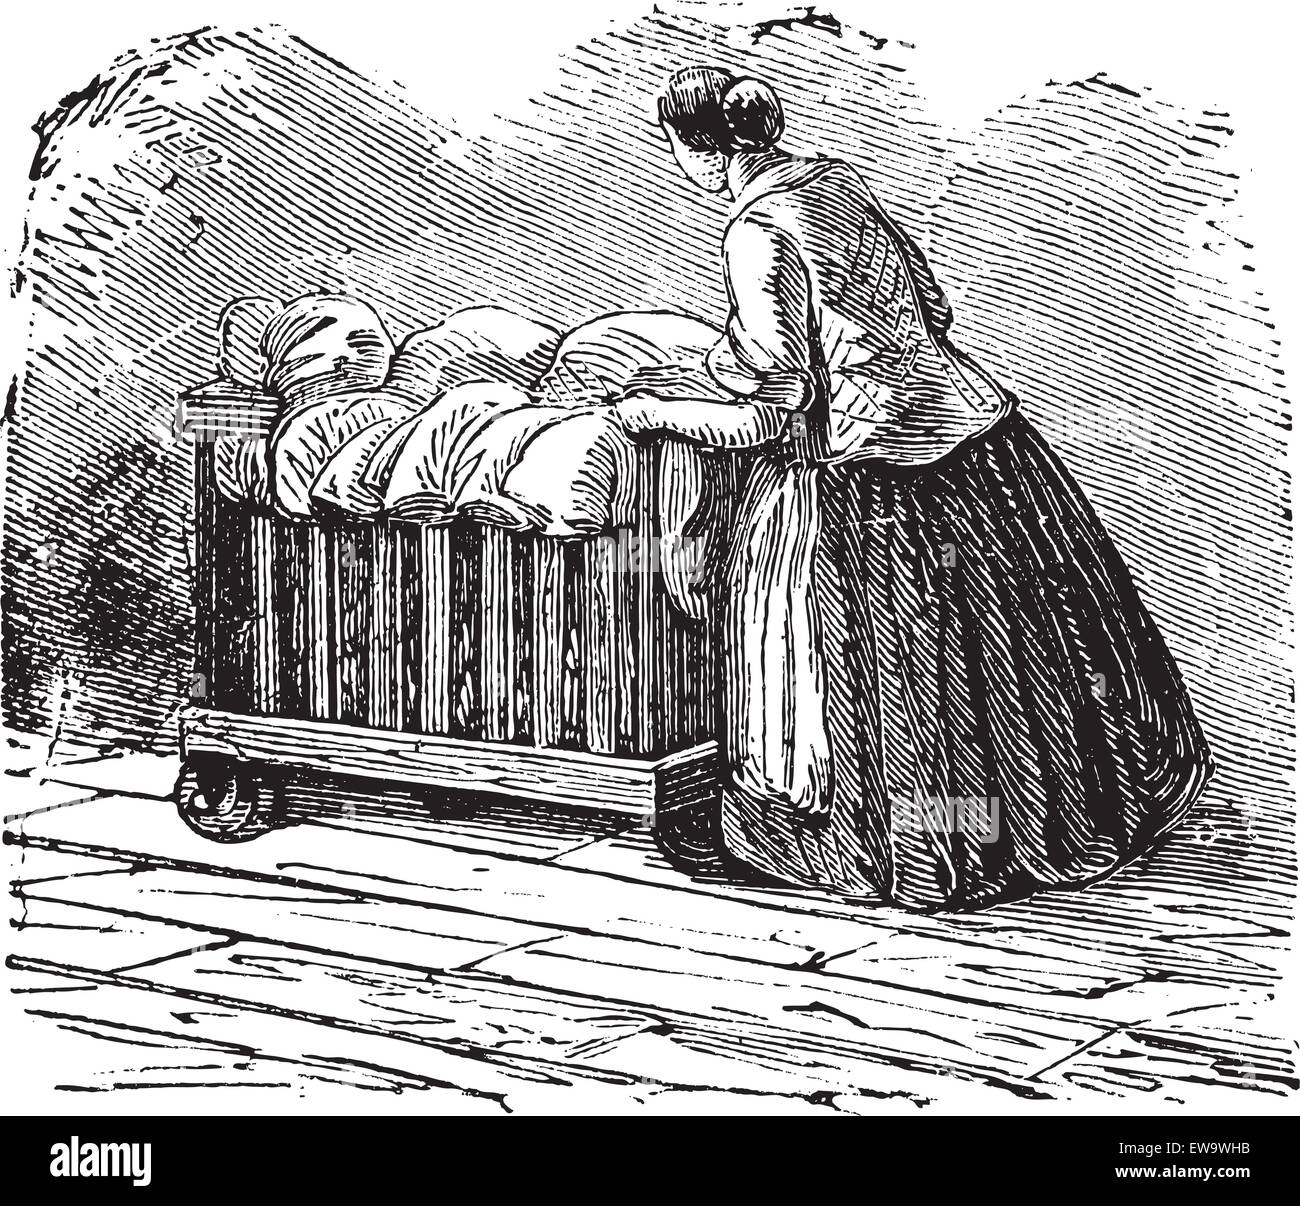 Vieille illustration gravée de femme transportant des vêtements, le tricycle. Encyclopédie industrielle E.-O. Lami - 1875 Illustration de Vecteur